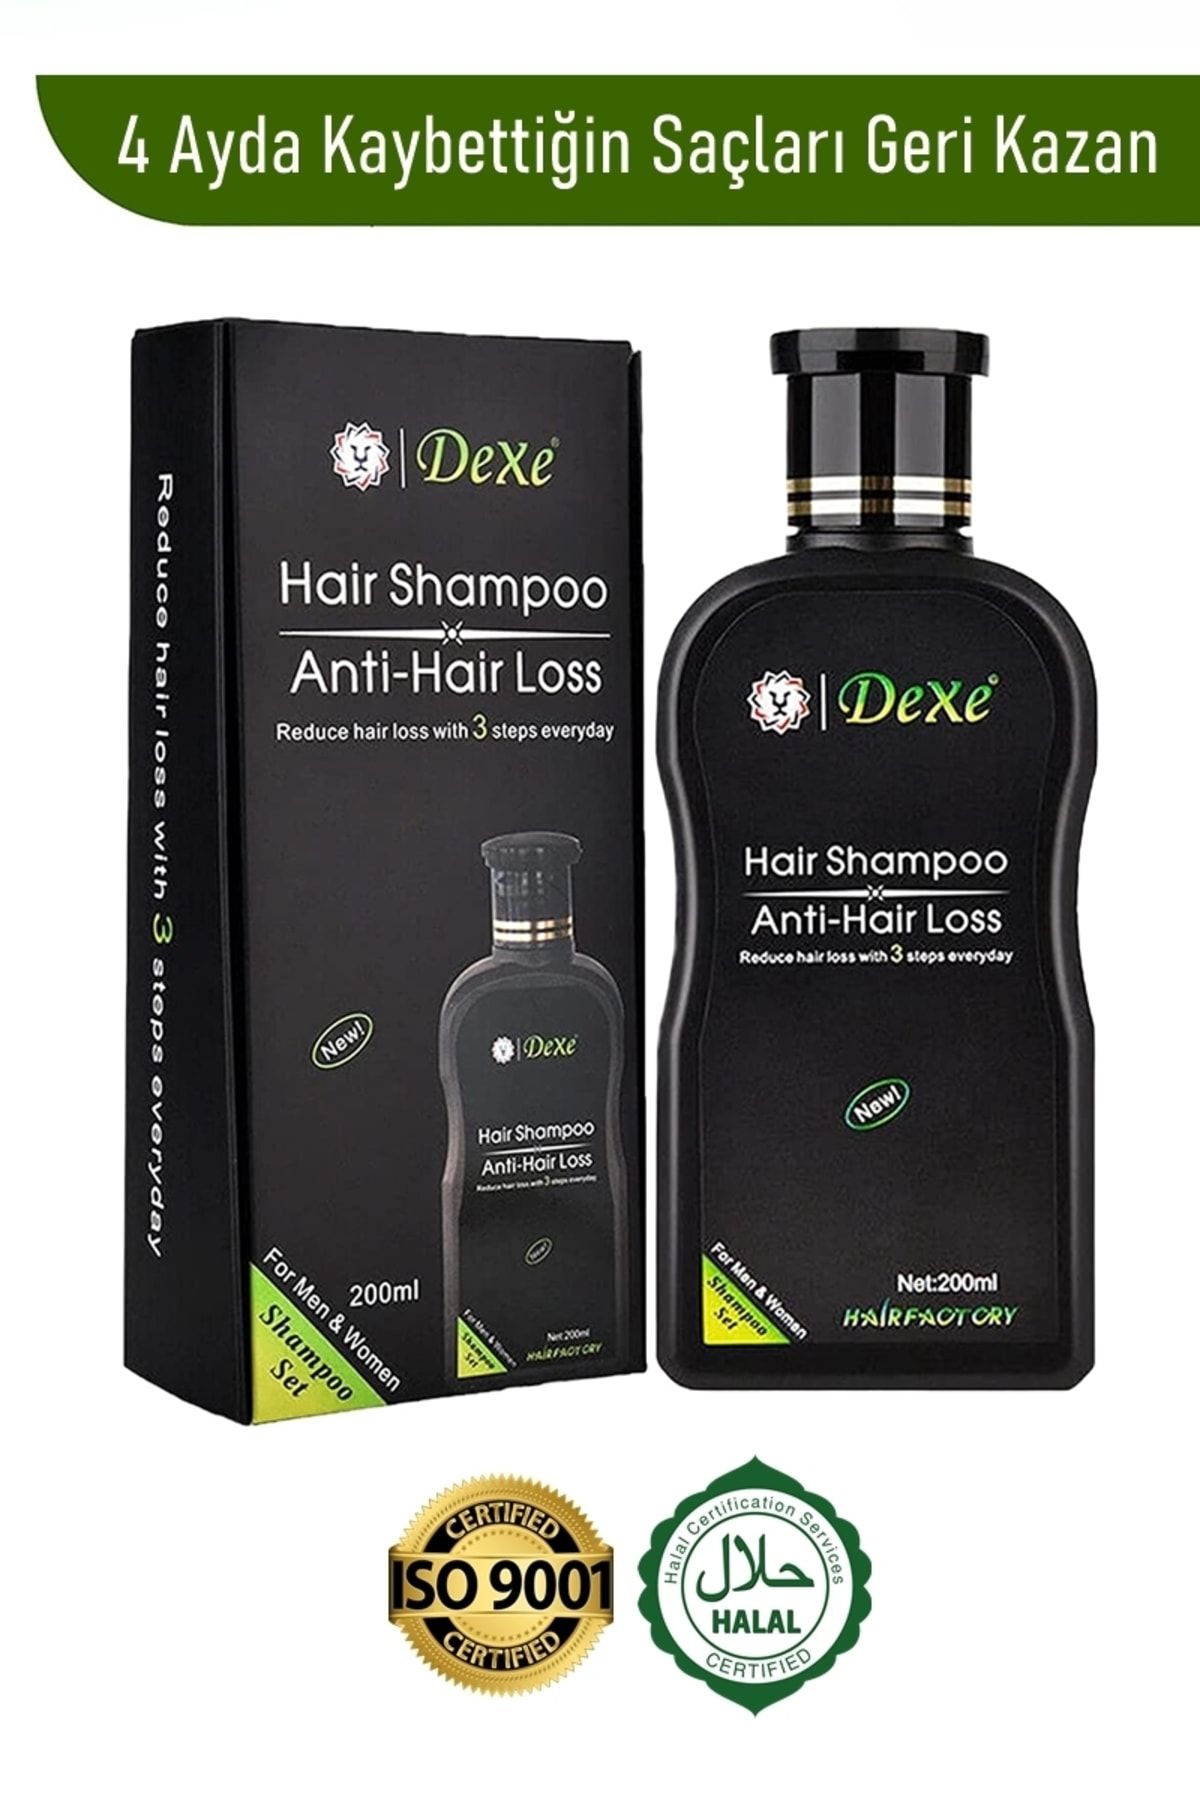 Dexe Saç Dökülmesine Karşı Şampuan, Incelmiş Saçlar Ve Saç Dökülmesi Için Şampuan